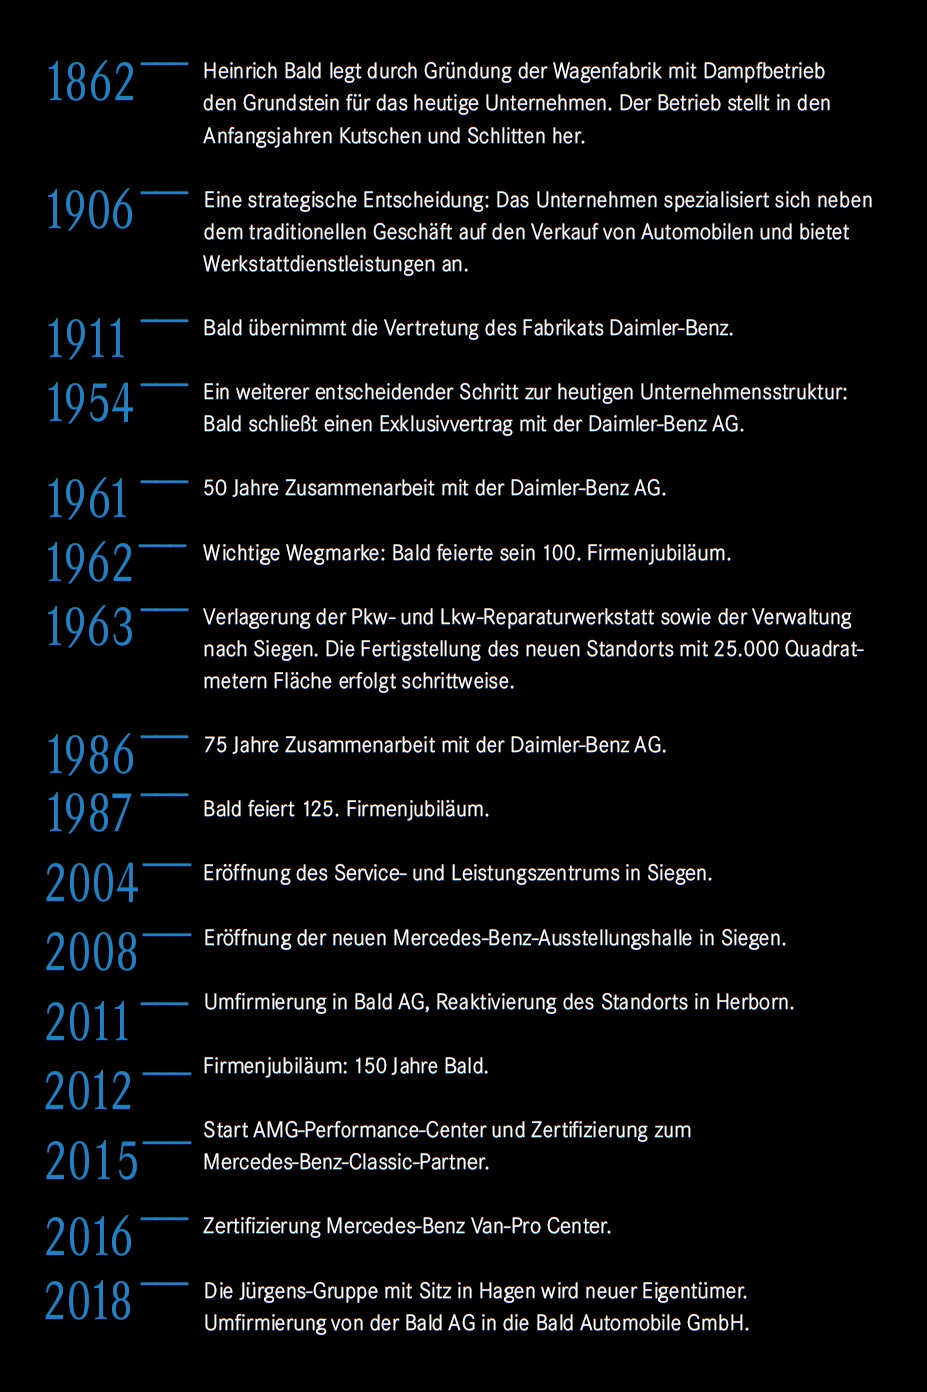 Die Unternehmensgeschichte der Bald Automobile GmbH